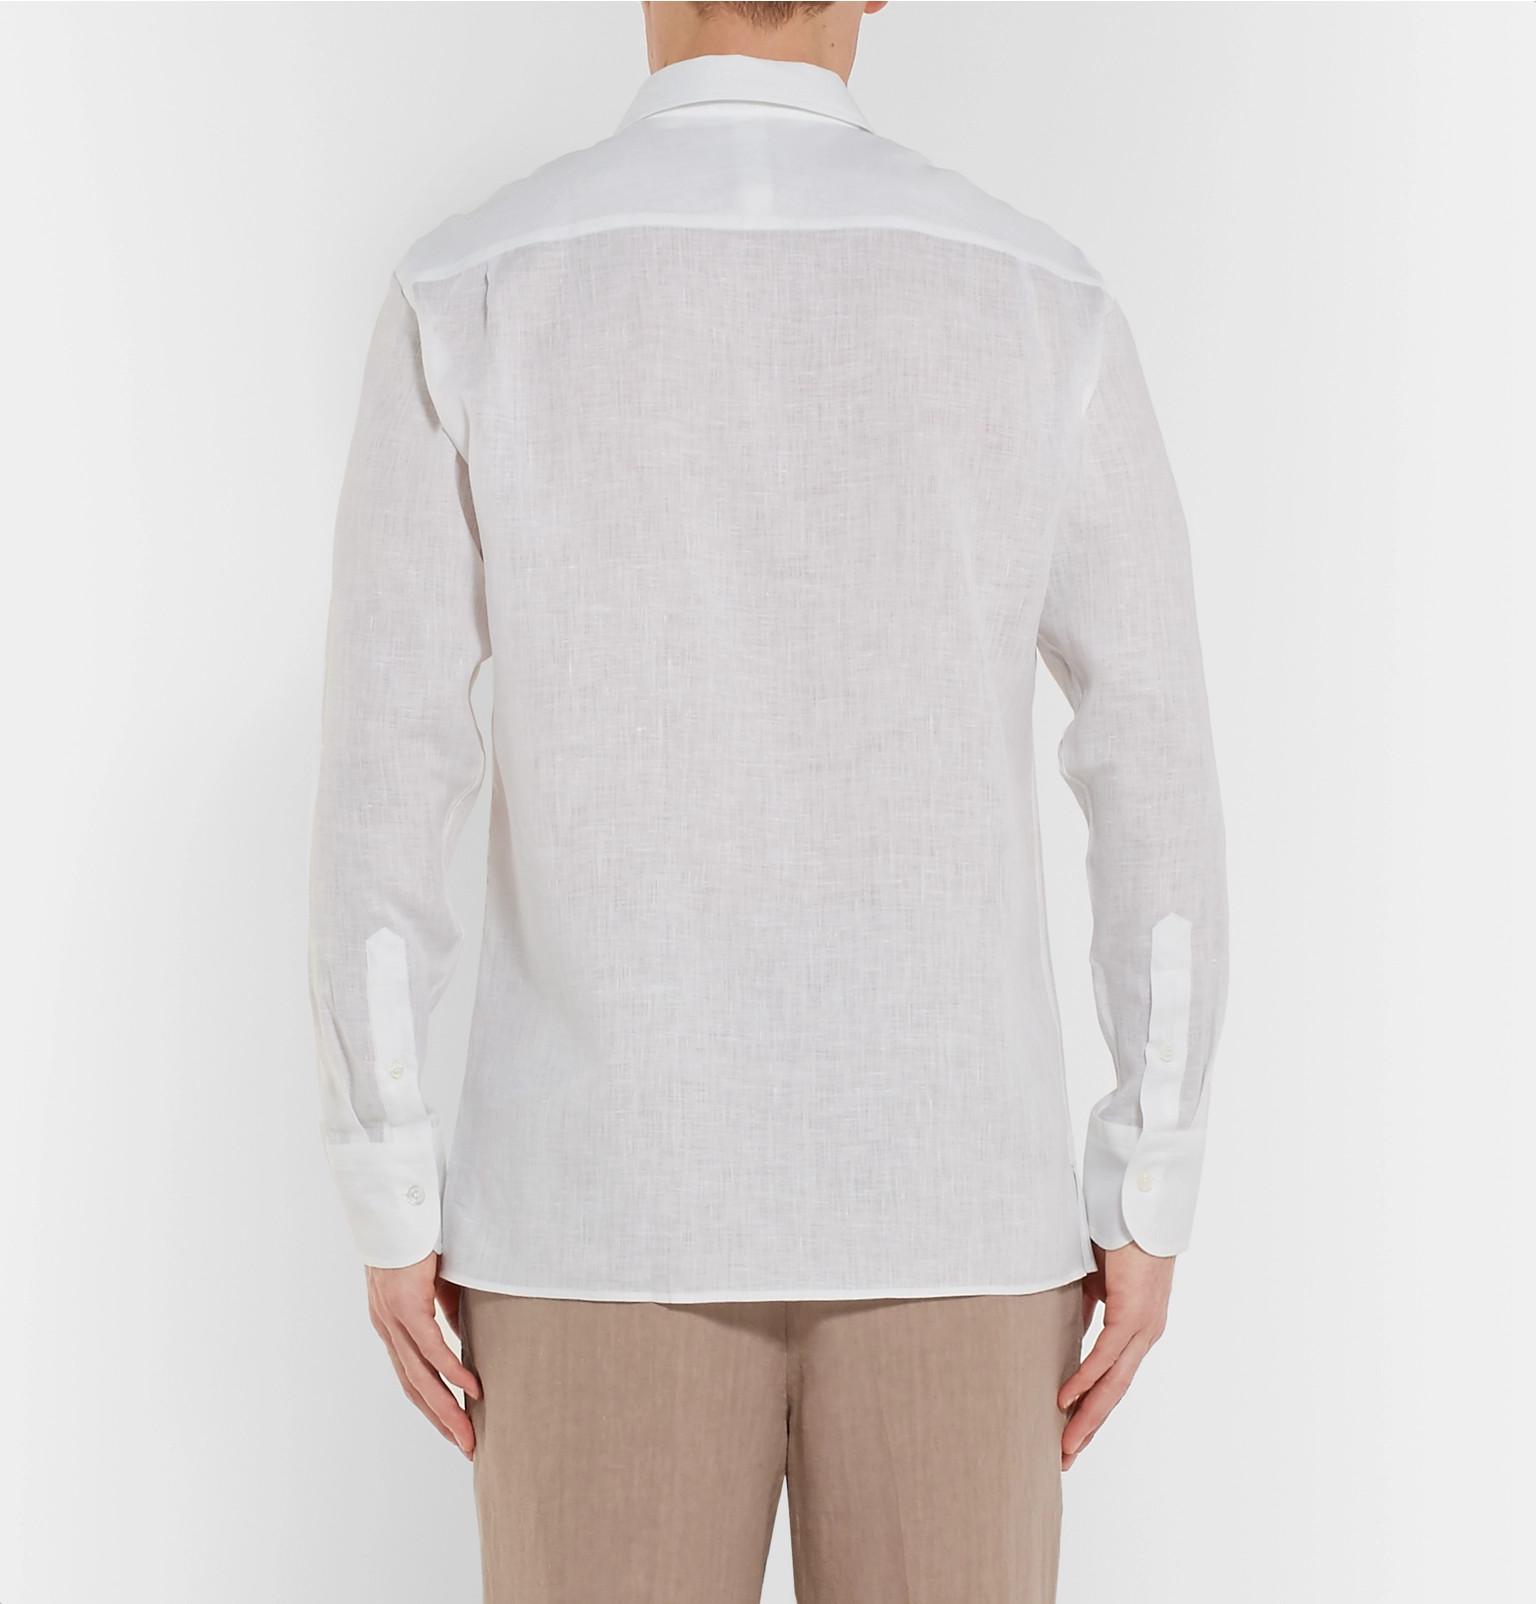 Dunhill Linen Shirt in White for Men - Lyst